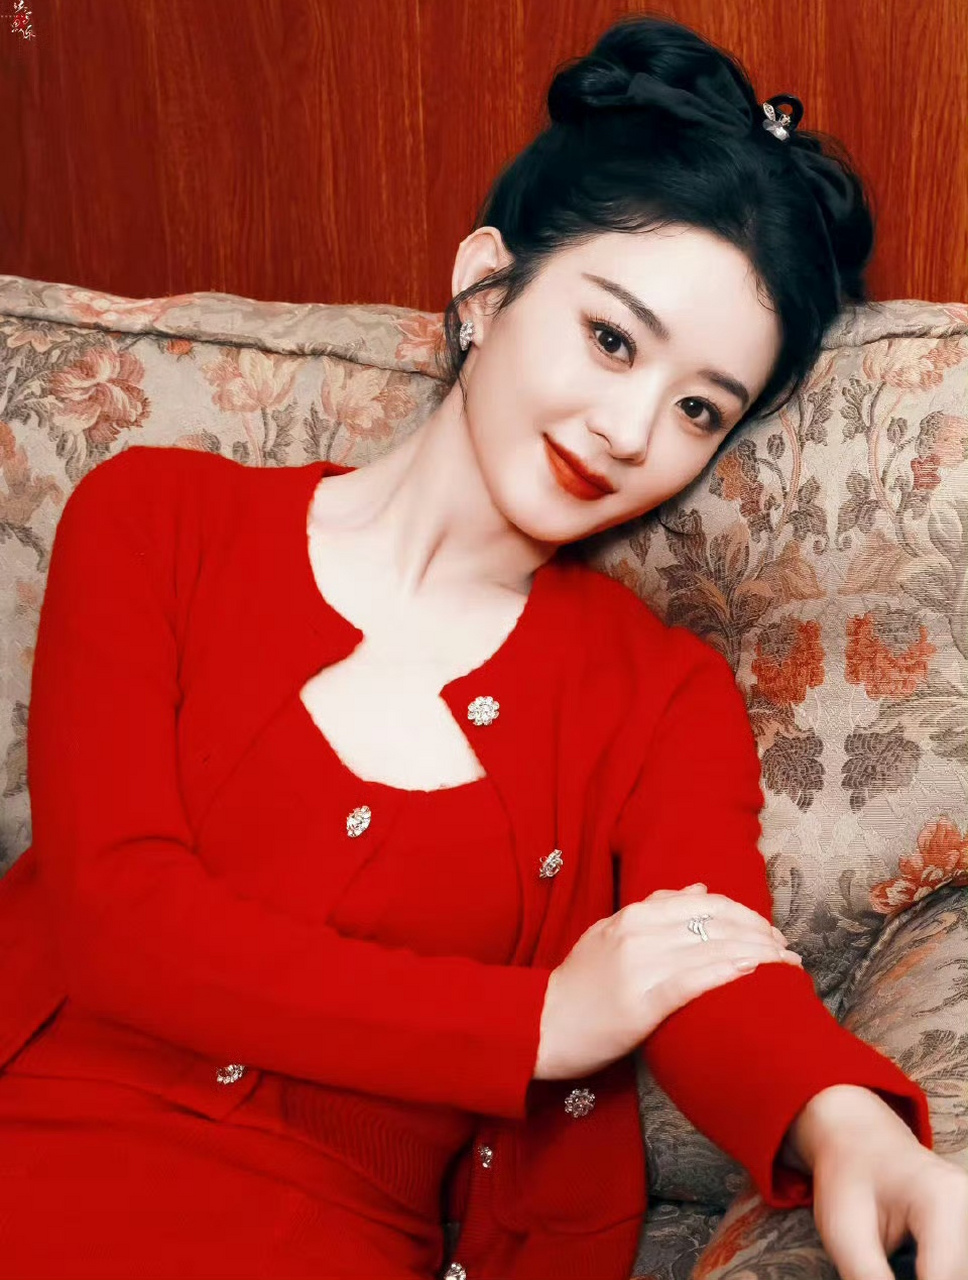 赵丽颖,红色连衣裙,优雅复古!